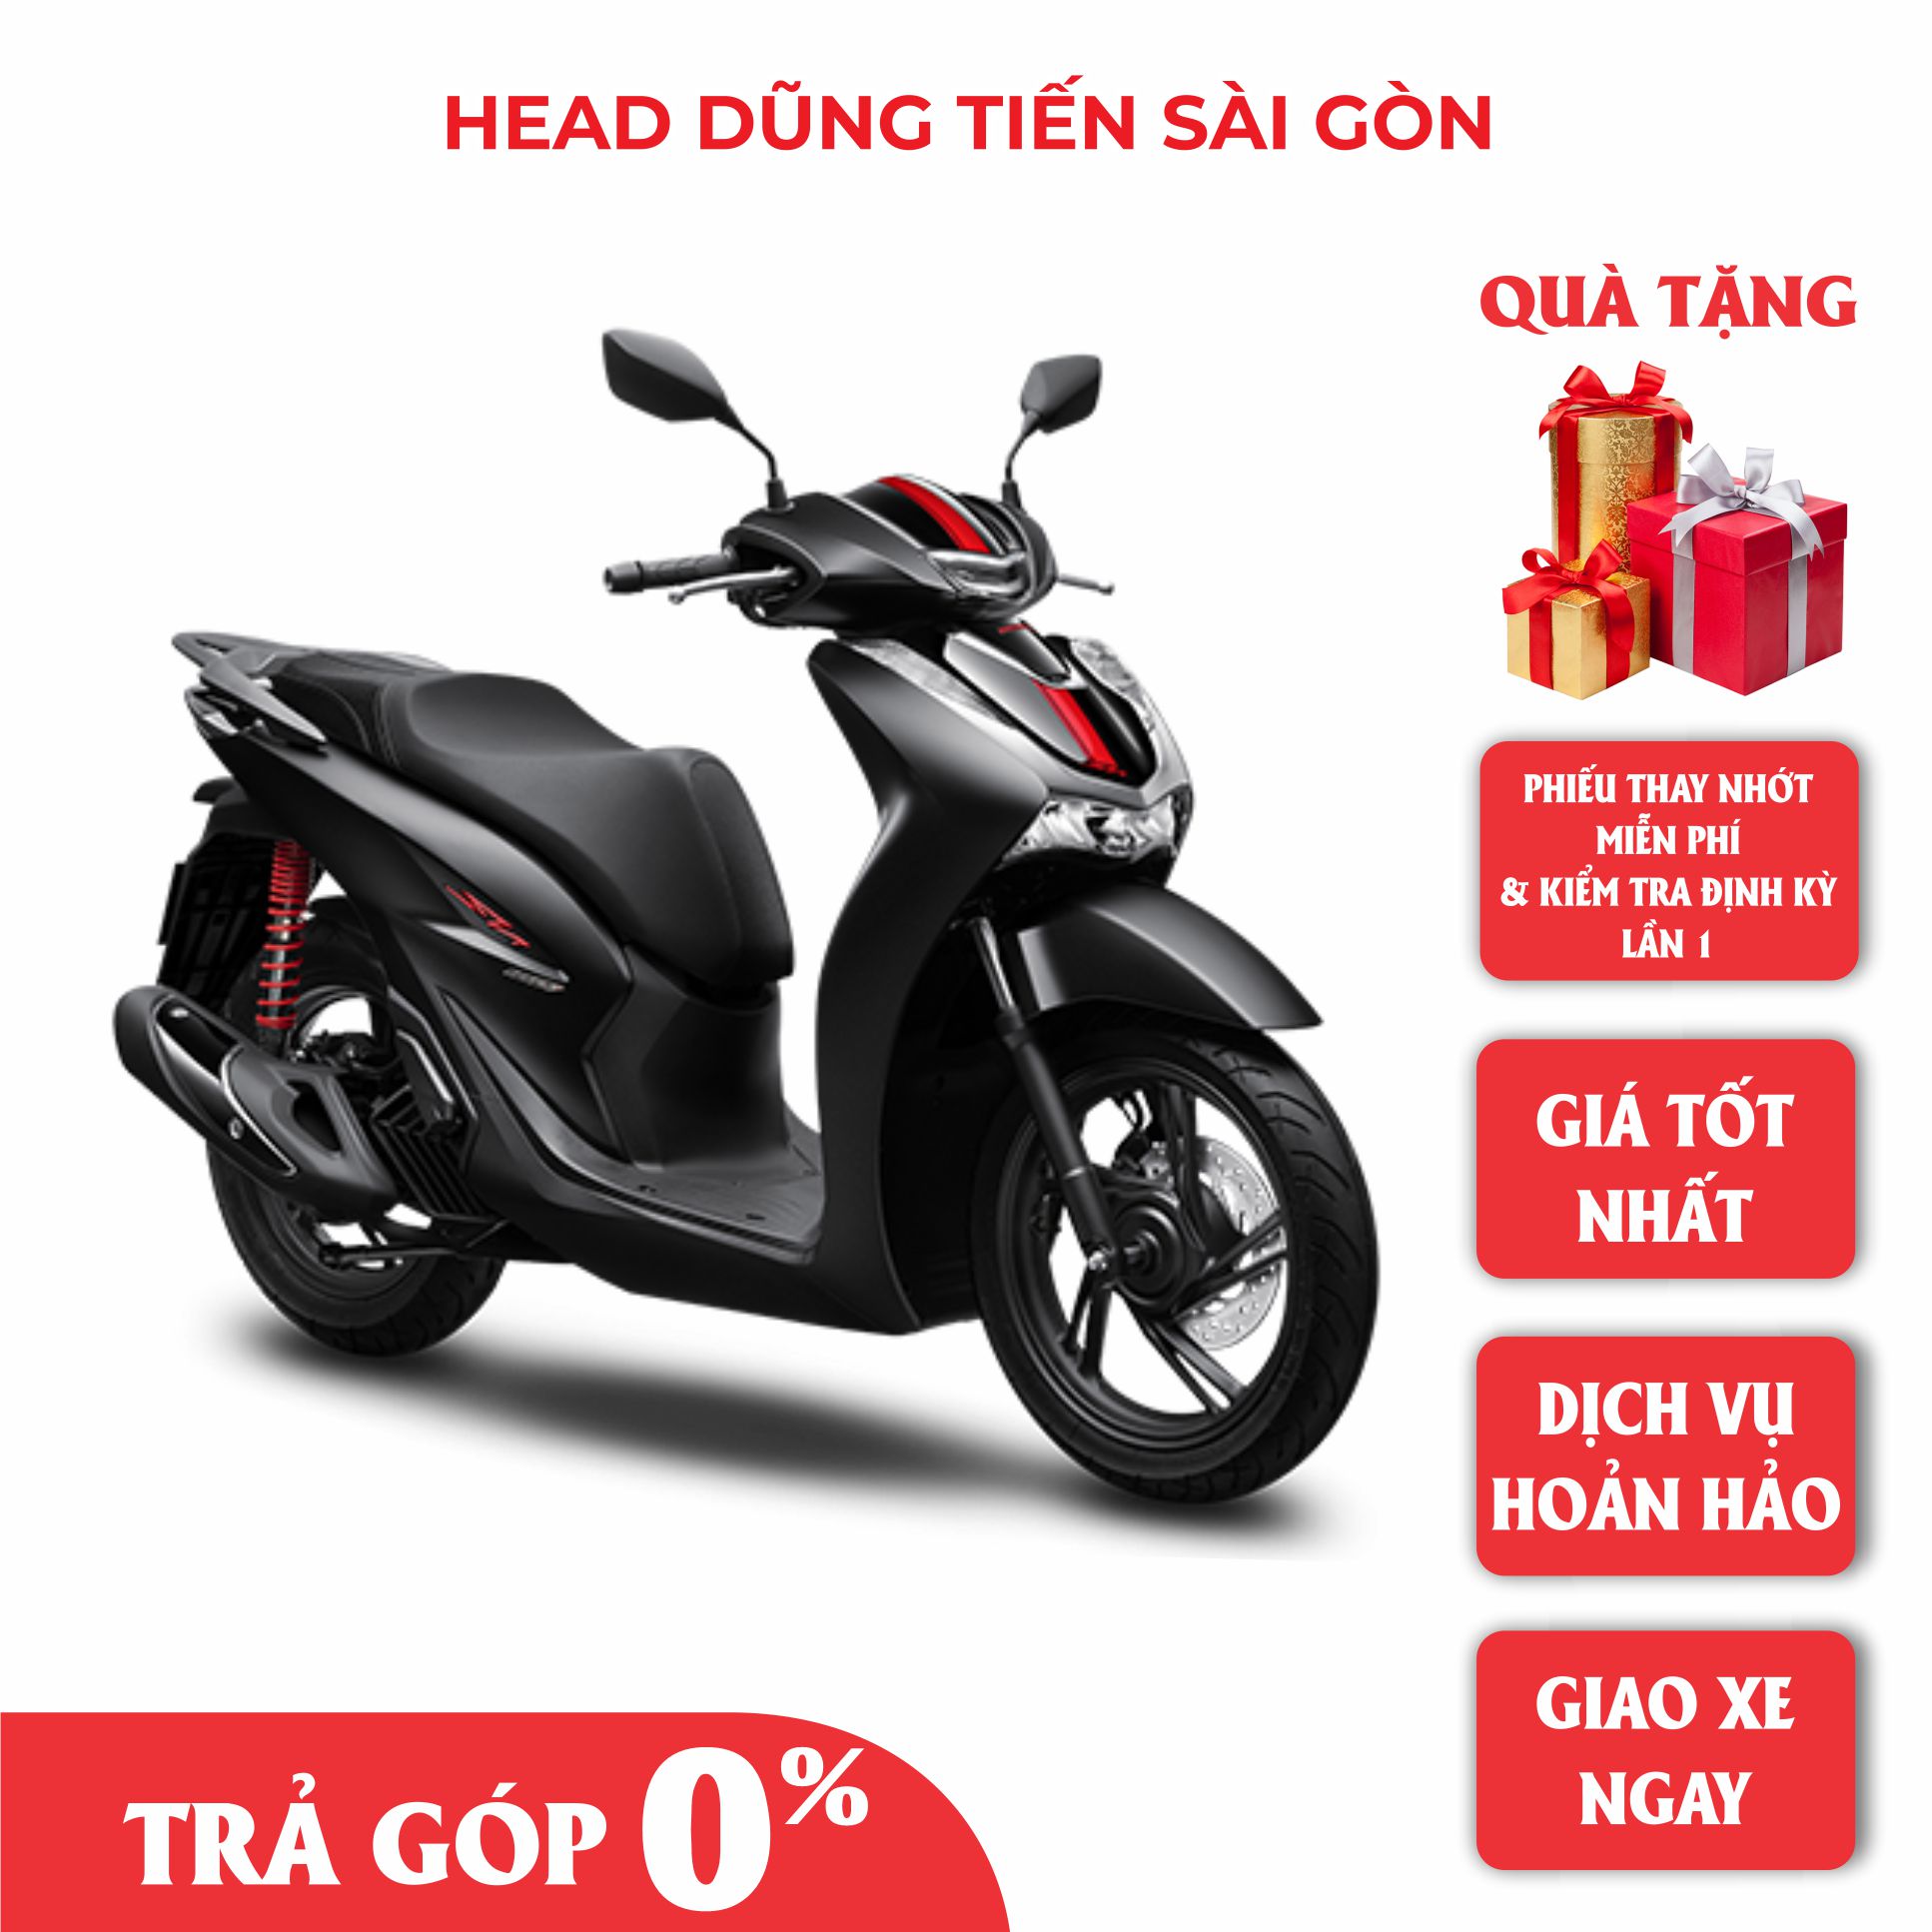 Giá xe Honda SH 2021 mới nhất tại đại lý khiến người Việt ngỡ ngàng